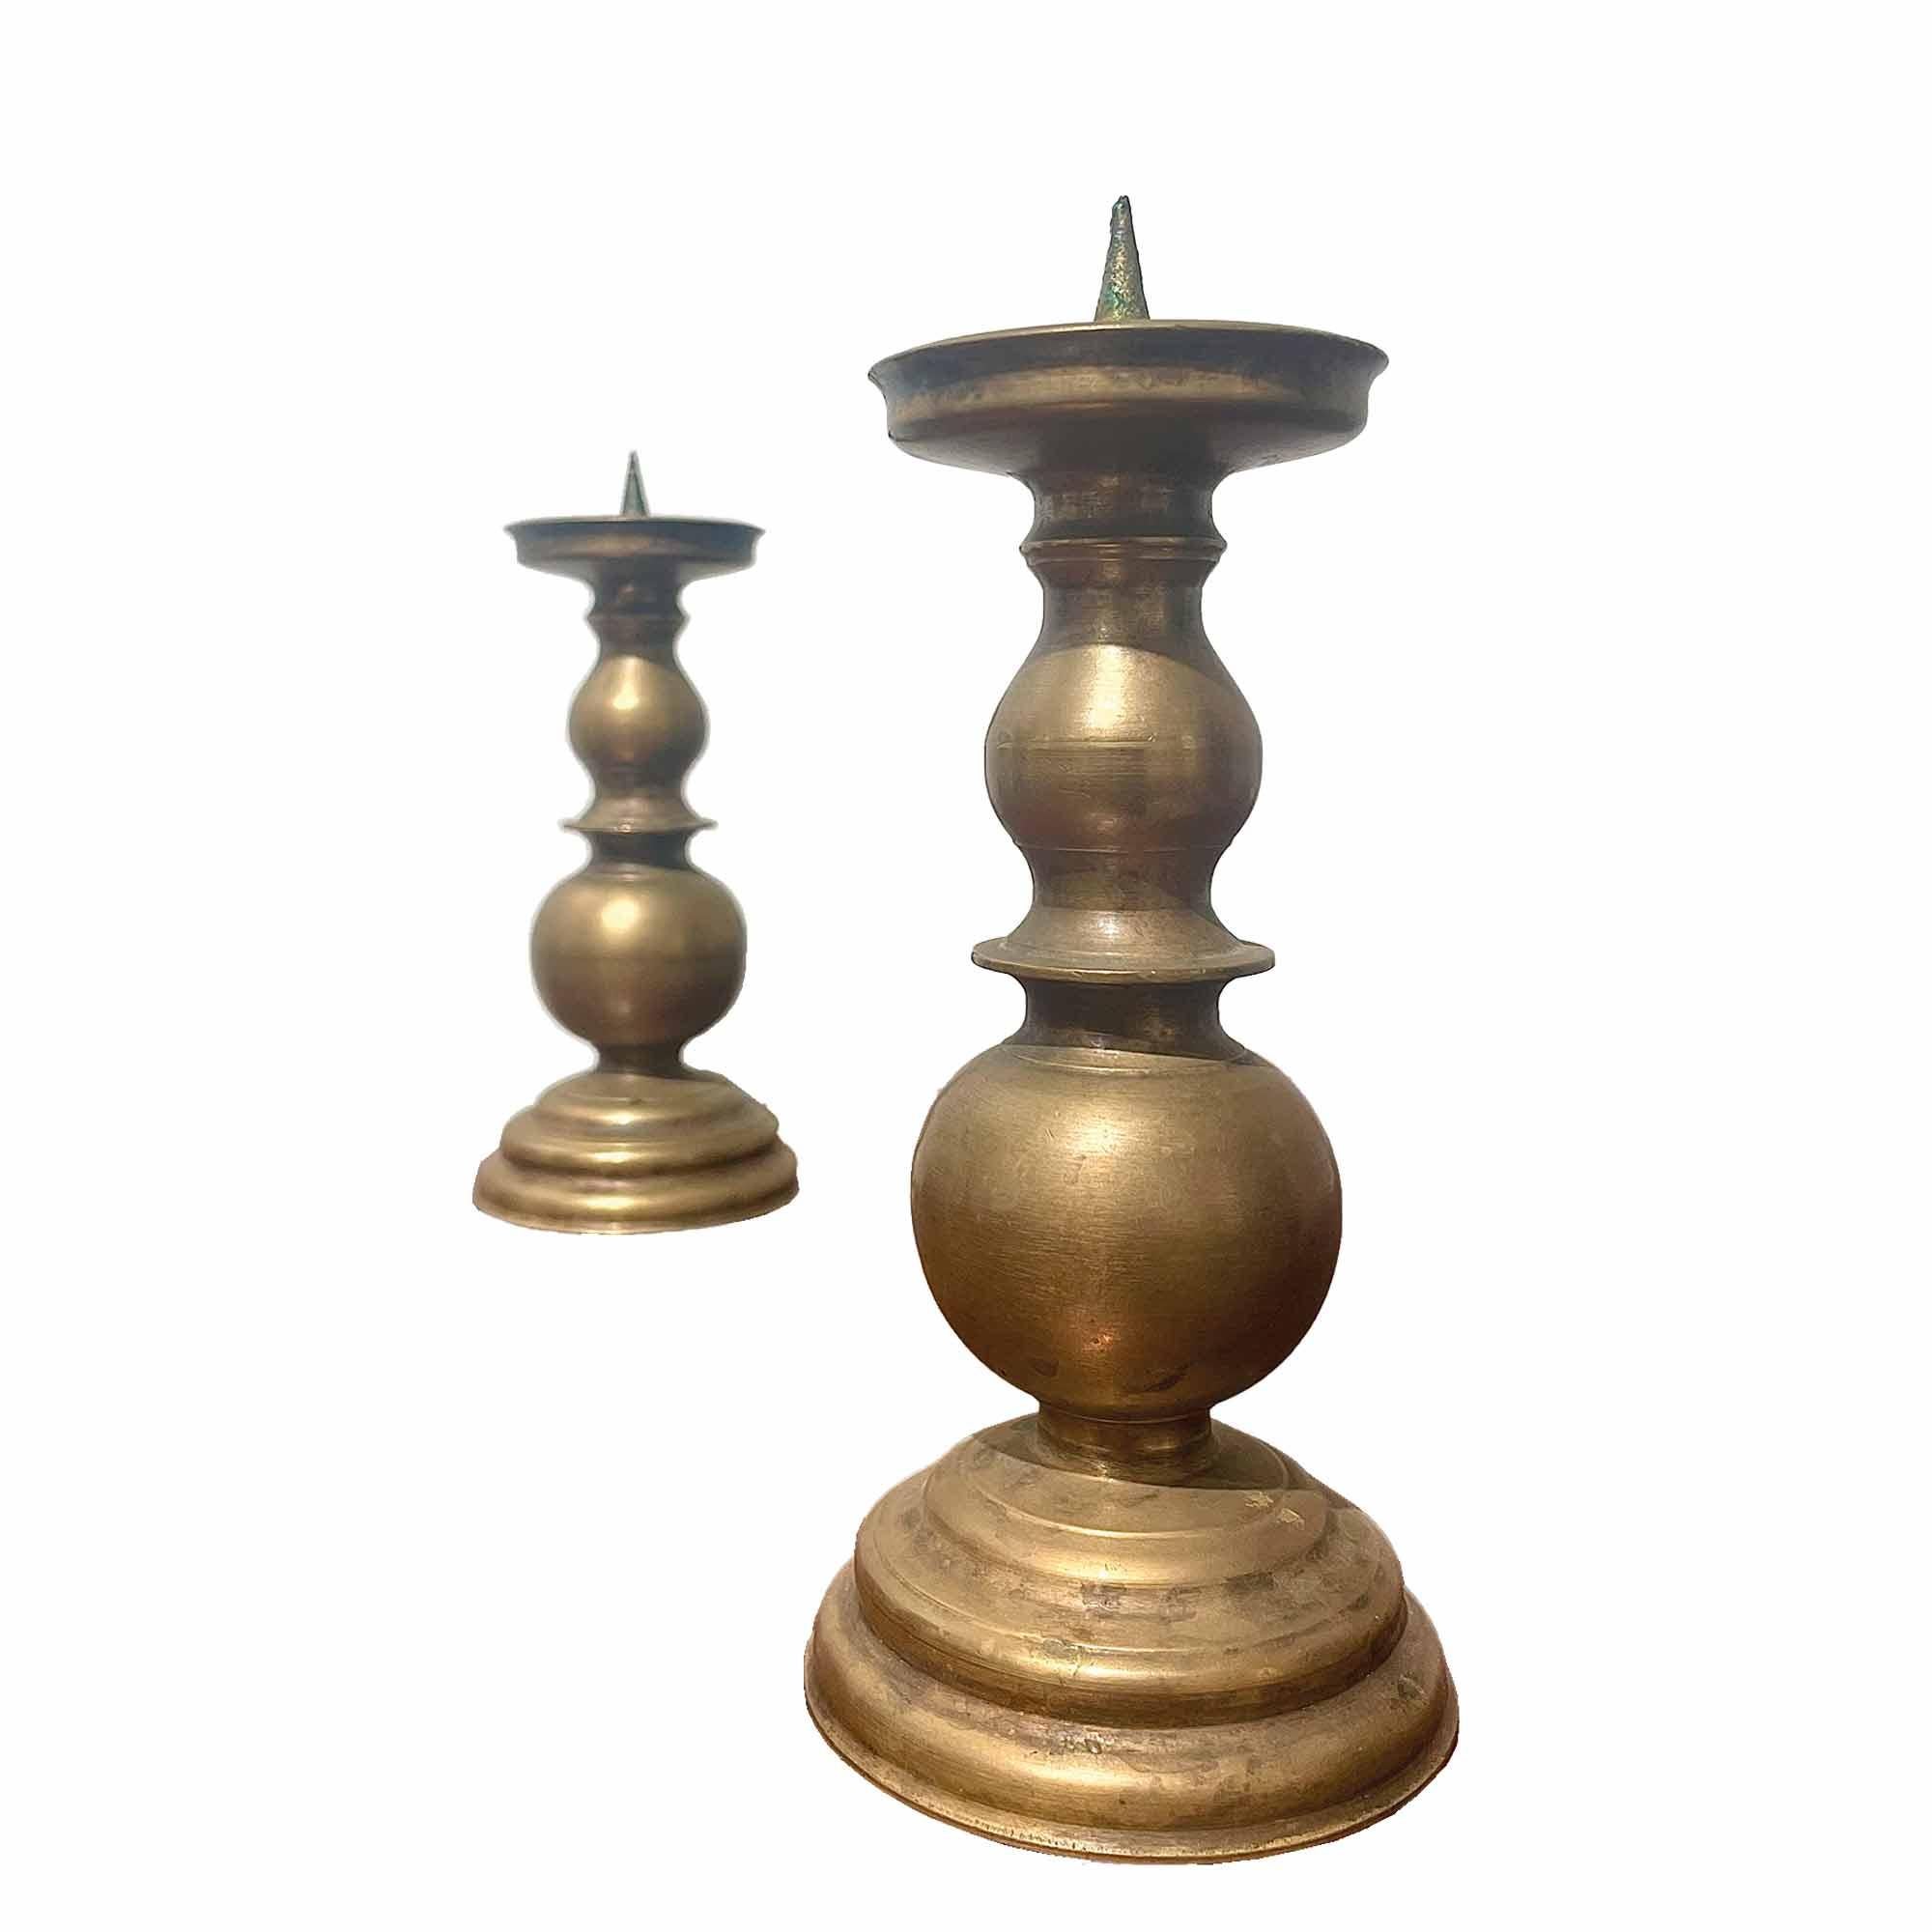 Paar Vintage-Kerzenhalter aus Messing, Ende 19. Jahrhundert. Sie zeichnen sich durch ihre durchsetzungsfähigen und raffinierten skulpturalen Linien aus. Ihre elegante Form verleiht ihnen viel Vintage-Charme und Schlichtheit. Kerzenhalter können eine